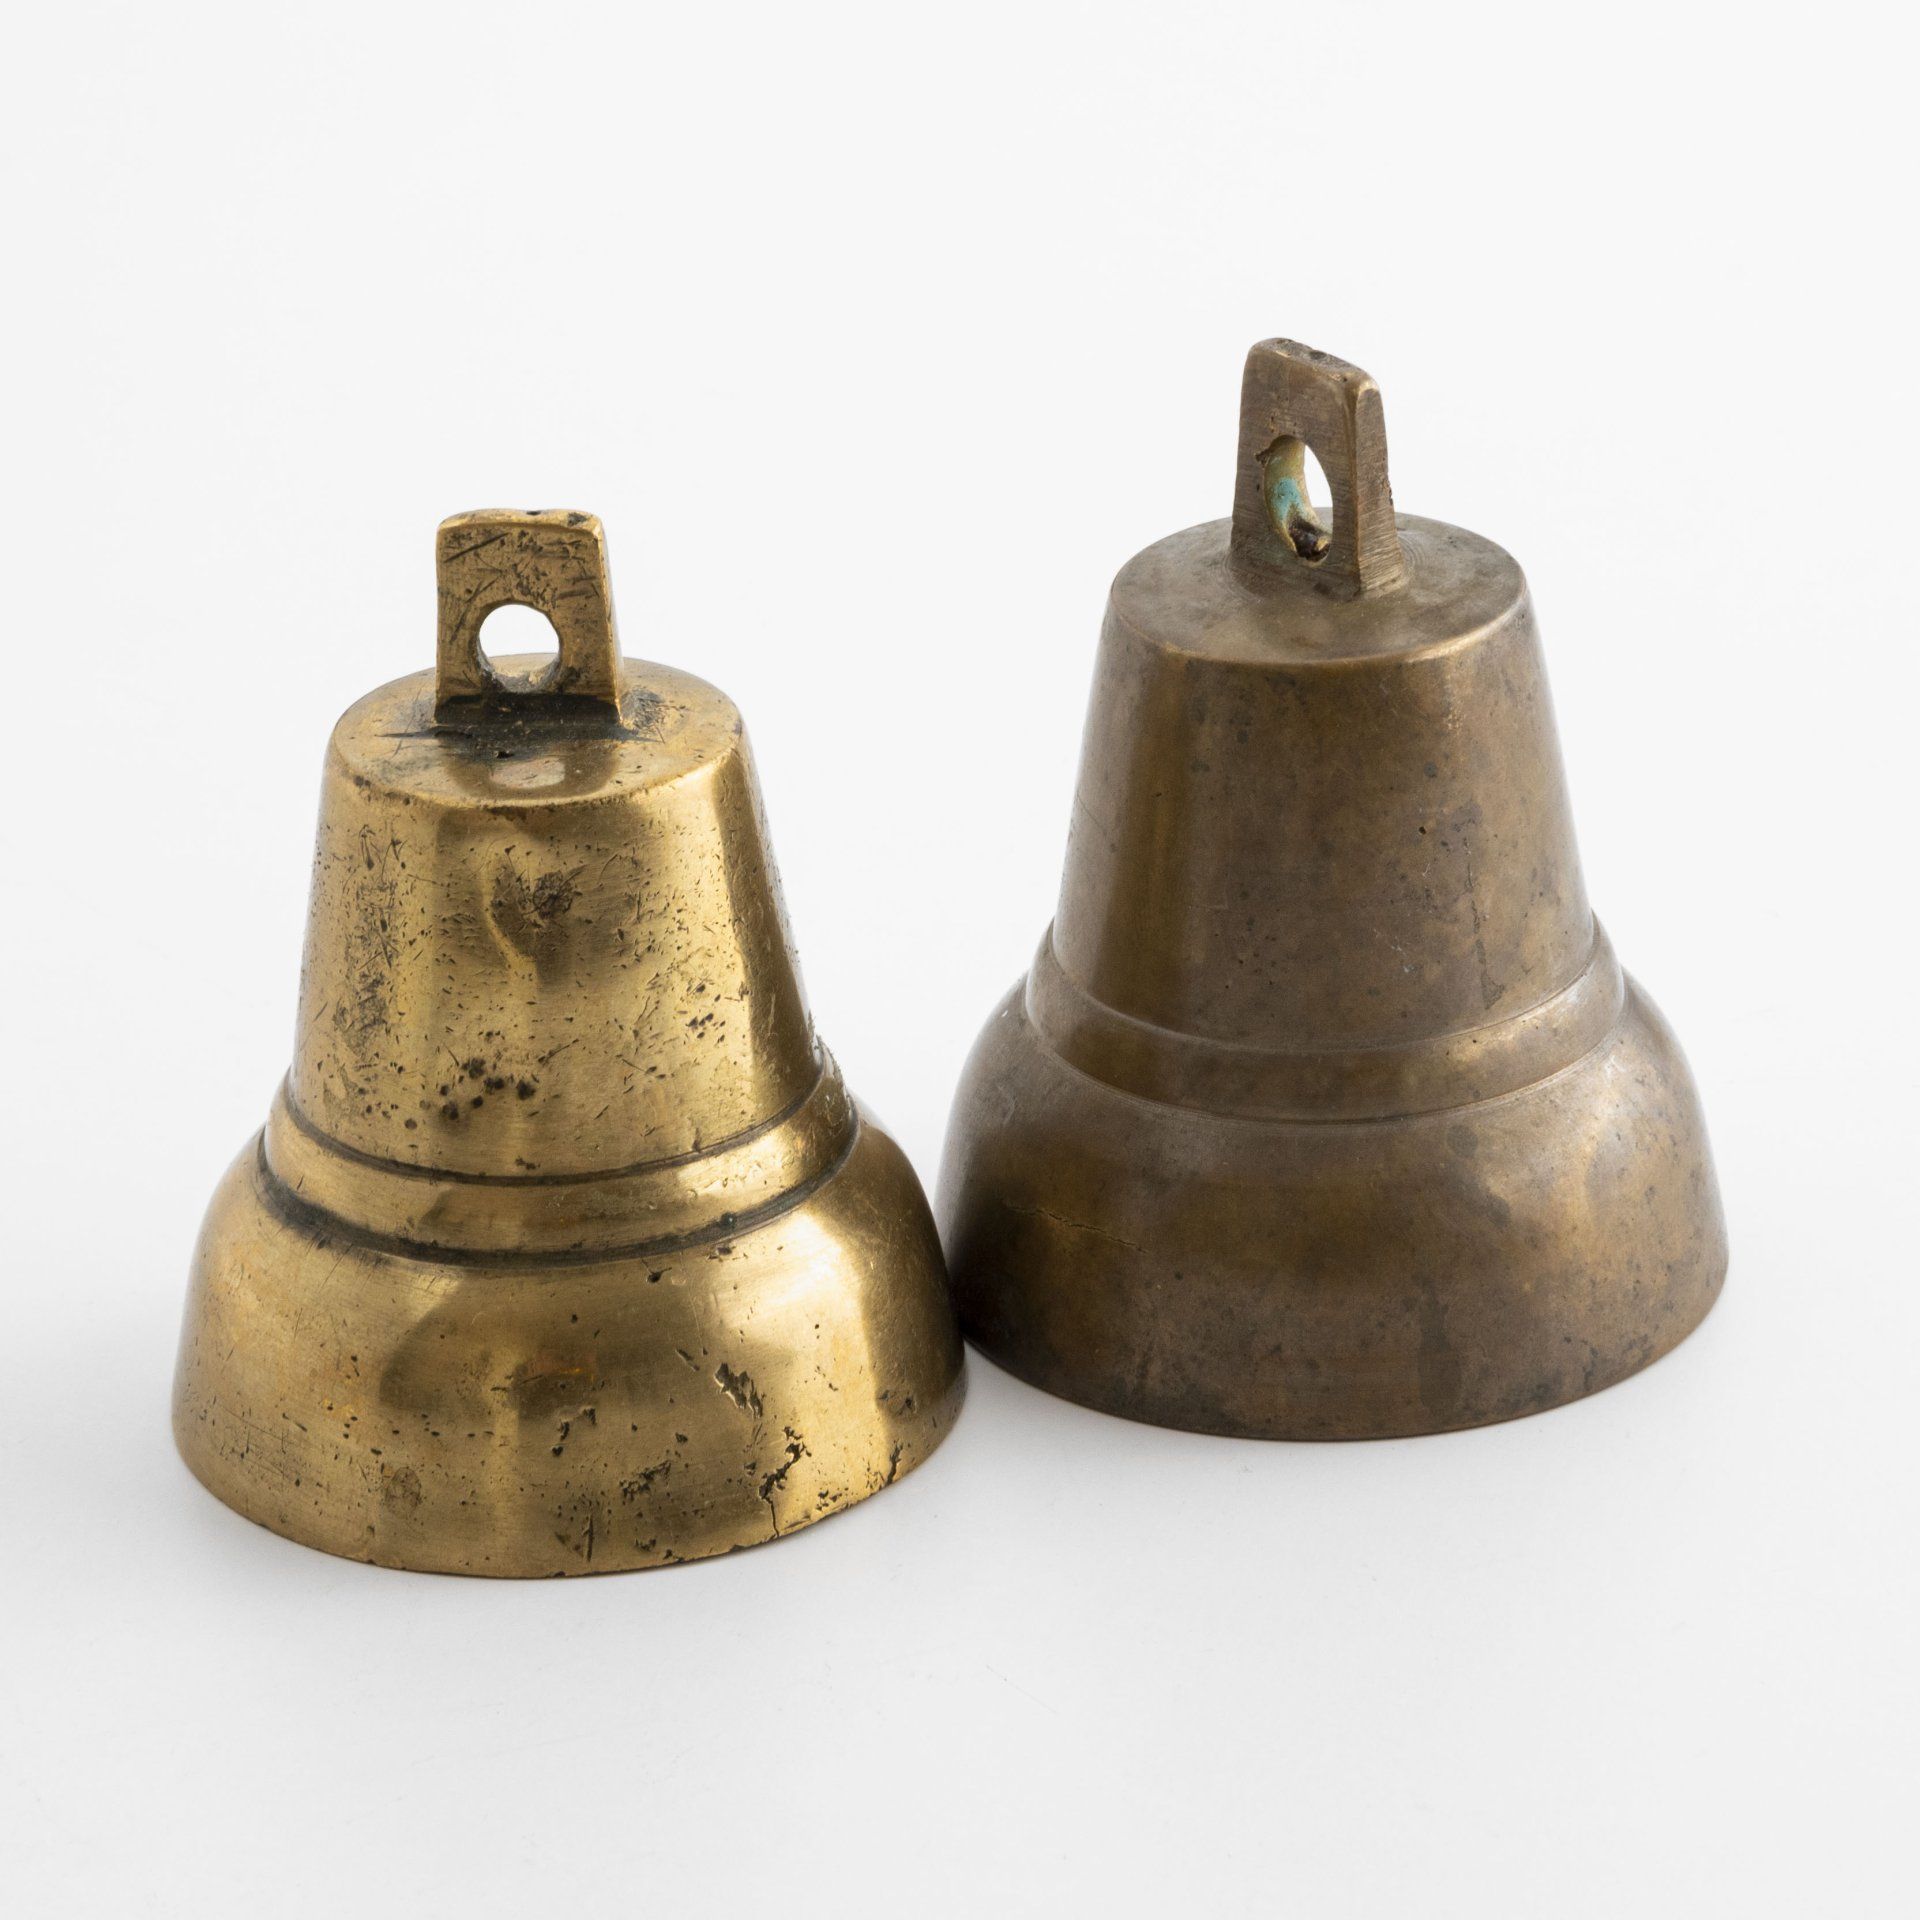 Цены поддужных колокольчиков. Колокольчик бронза 1878 Слобода. Старинные колокольчики из бронзы. Бронзовые бубенчики. Бронзовый колокол.